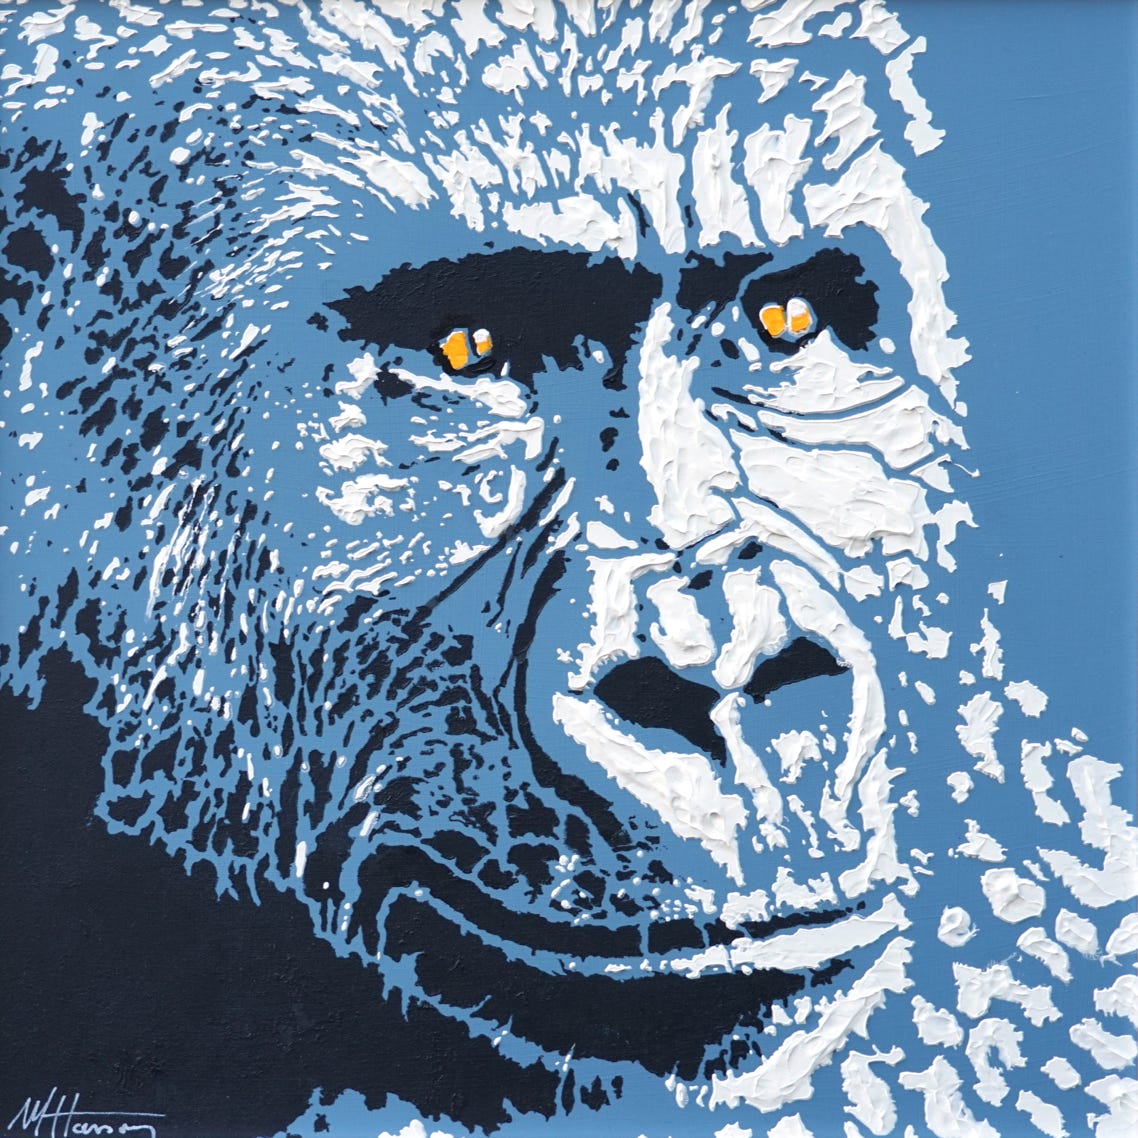 Gorille Congo tableau par Michel Hasson